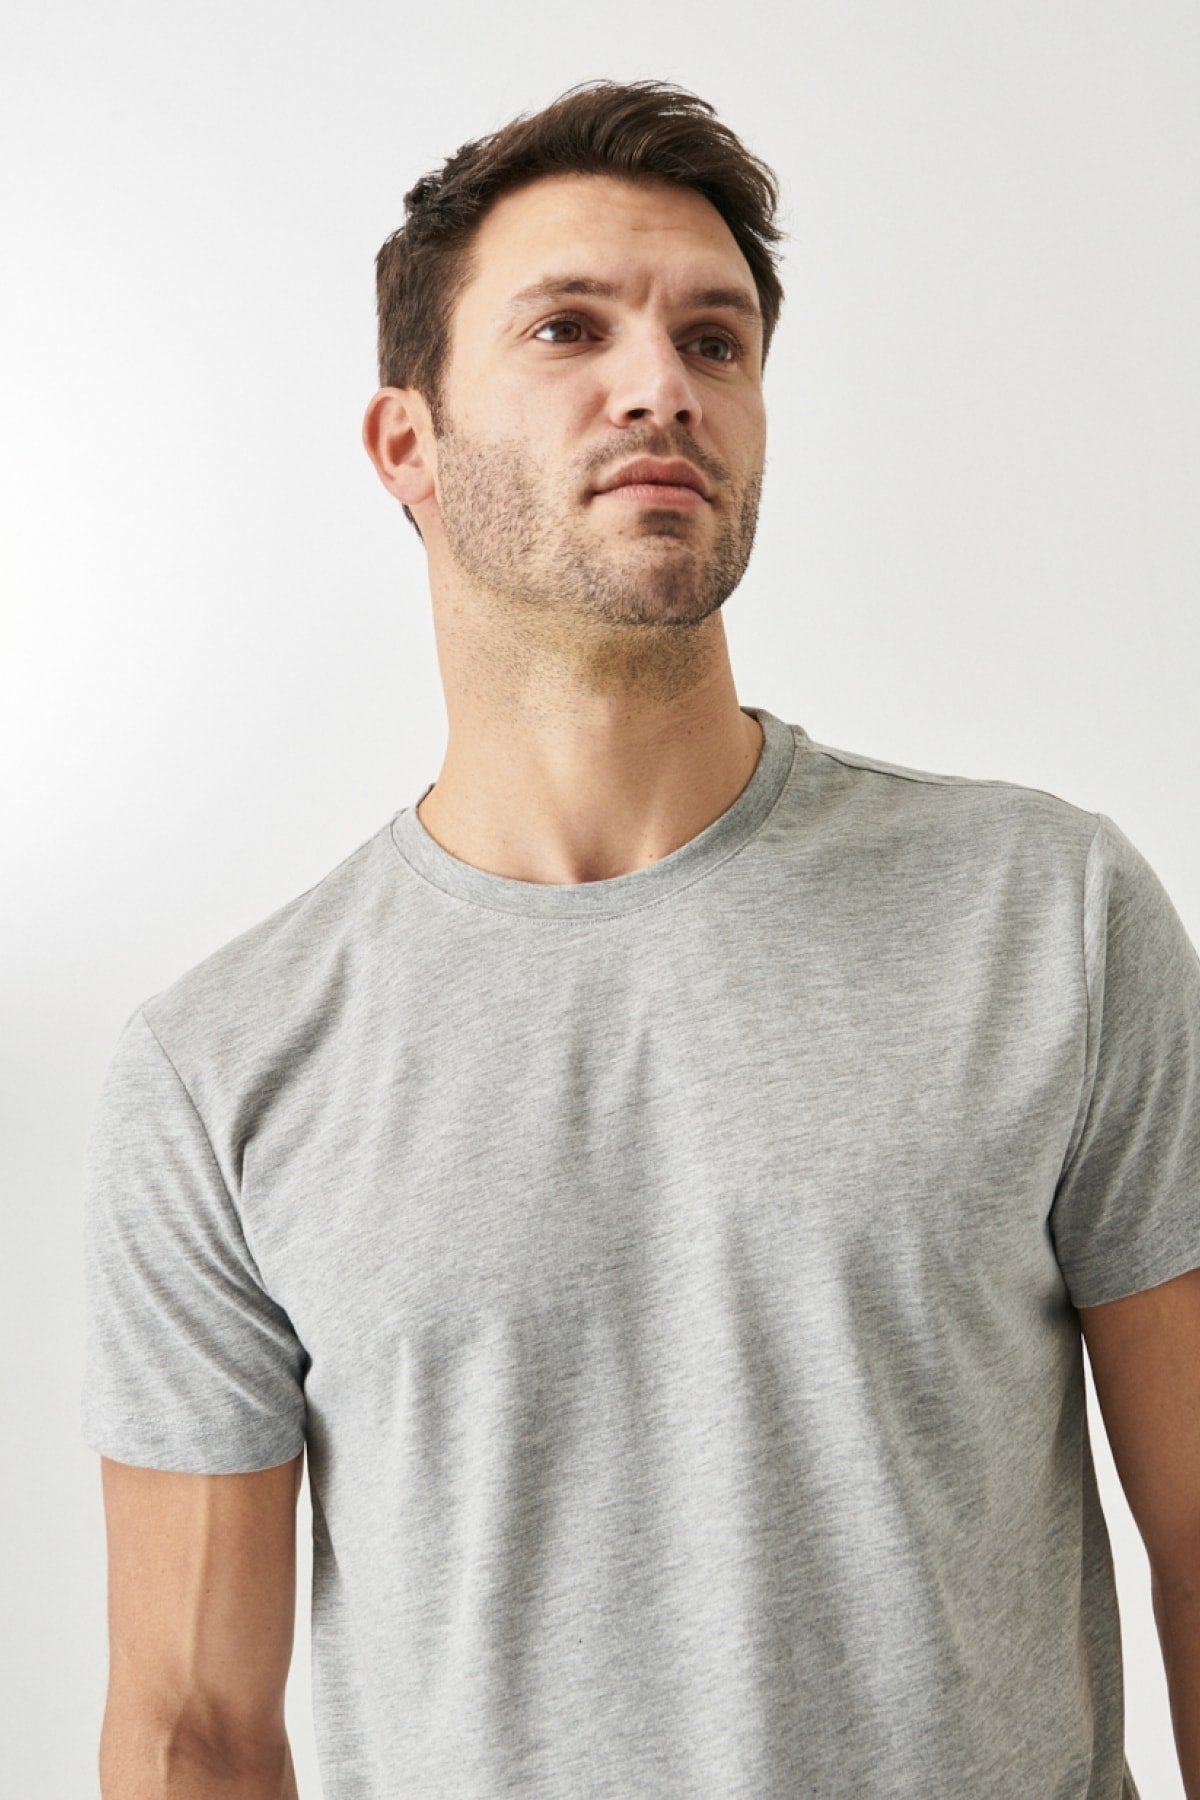  Мужская серая меланжевая хлопковая приталенная футболка узкого кроя с круглым вырезом и короткими рукавами